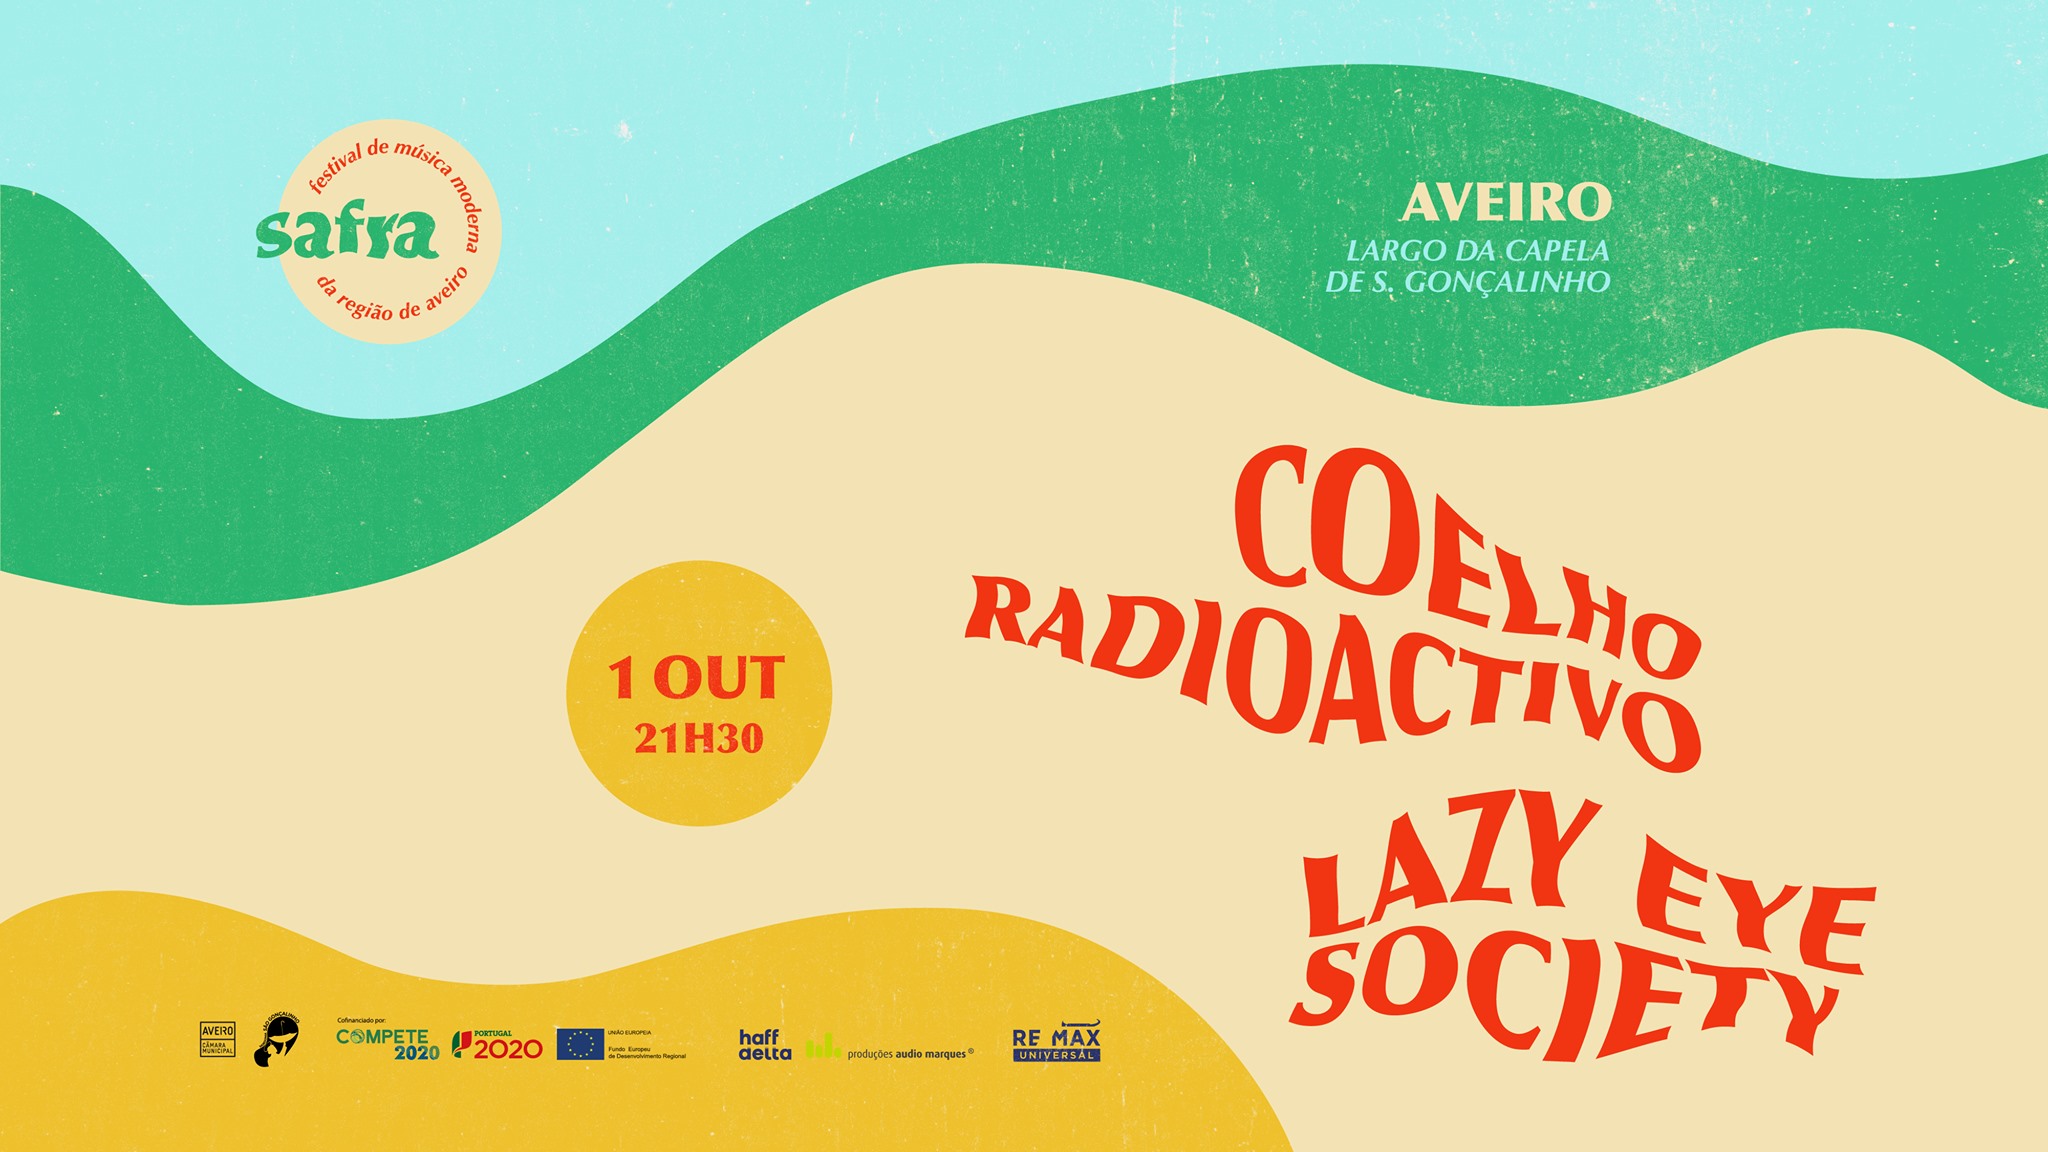 Festival SAFRA em Aveiro - Coelho Radioactivo + Lazy Eye Society